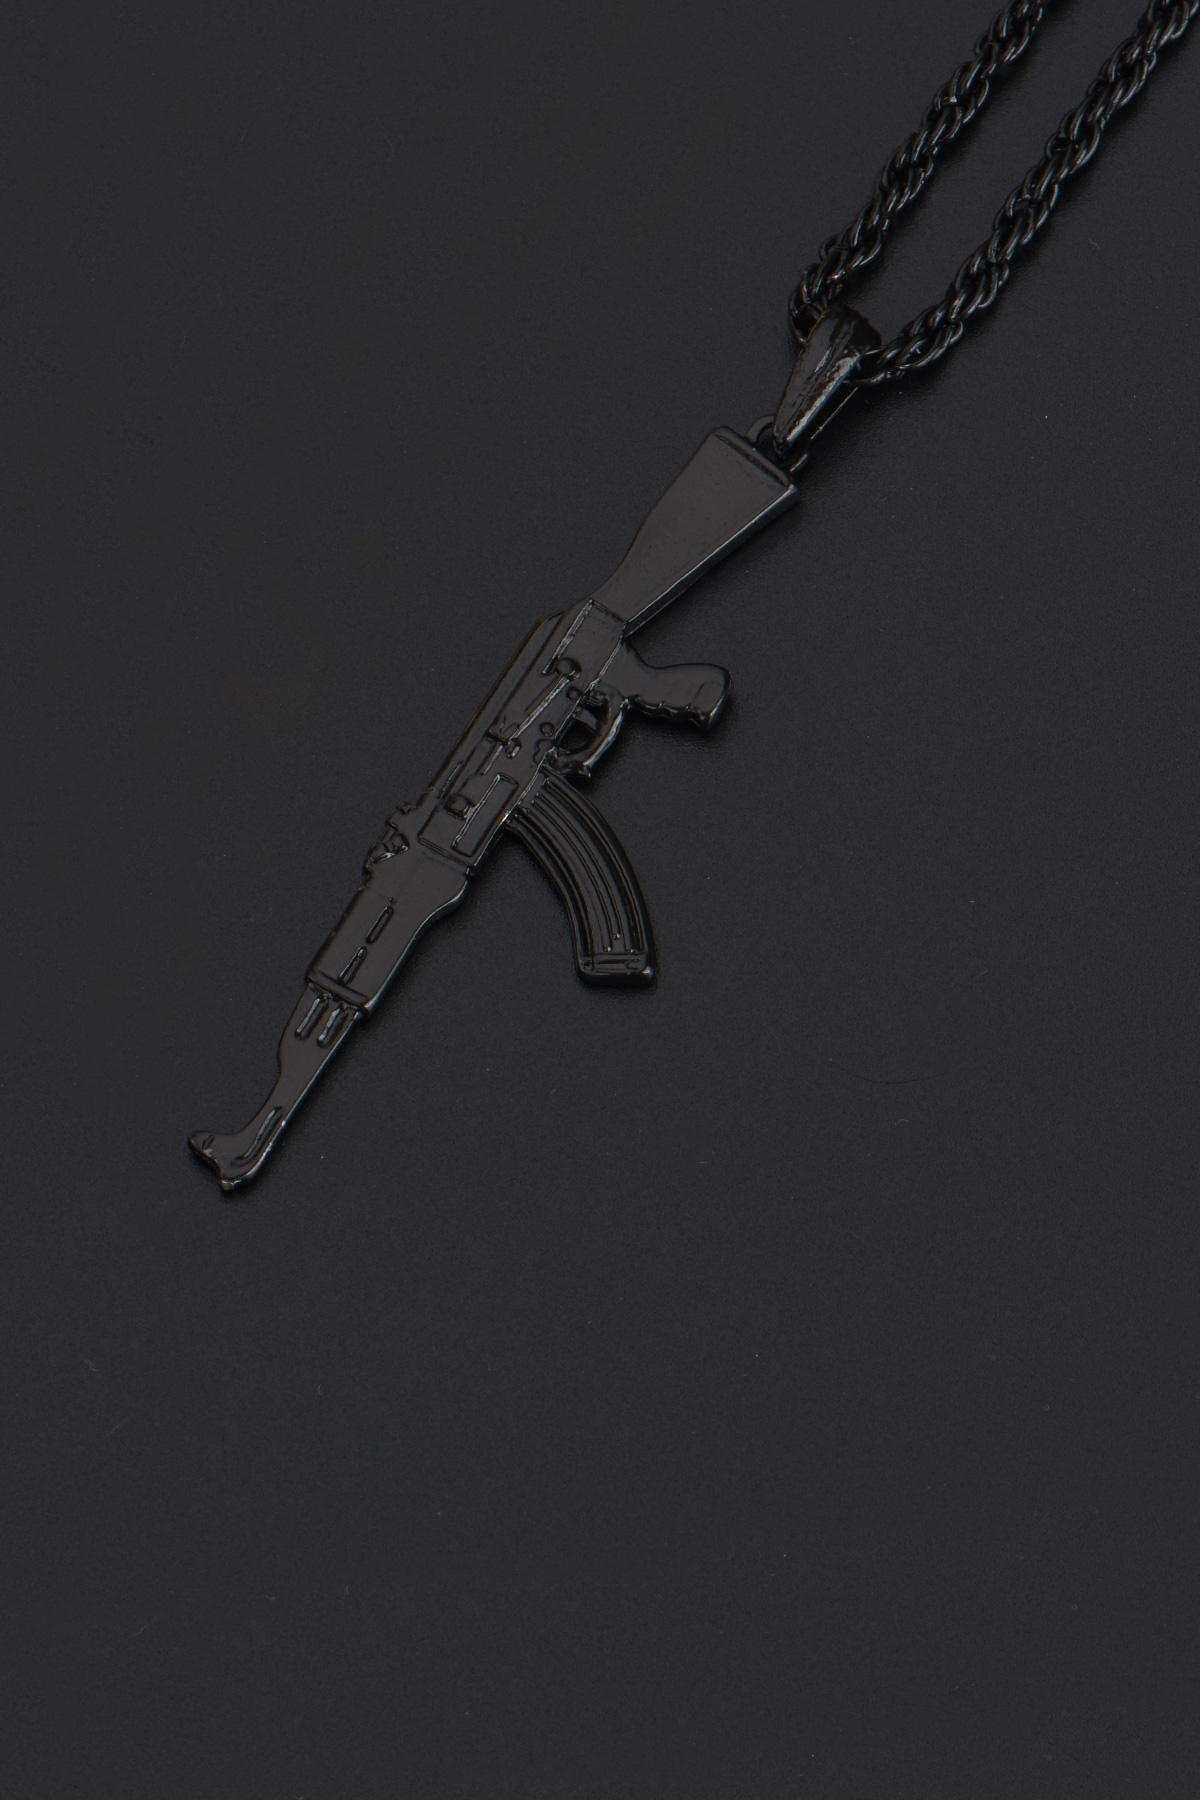 Mat Siyah PUBG Keleş AK-47 Kalaşnikof Kolye - CAZ0051